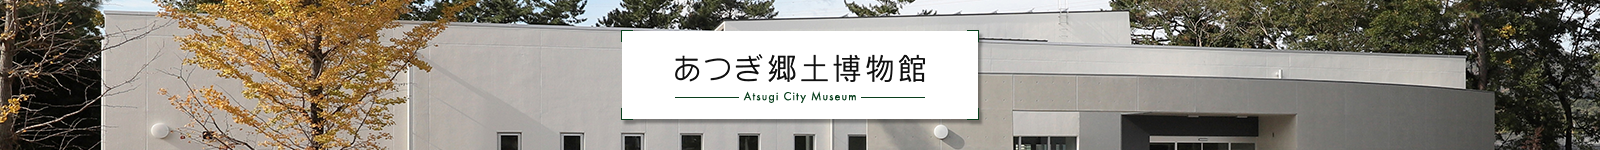 あつぎ郷土博物館-Atsugi City Museum-